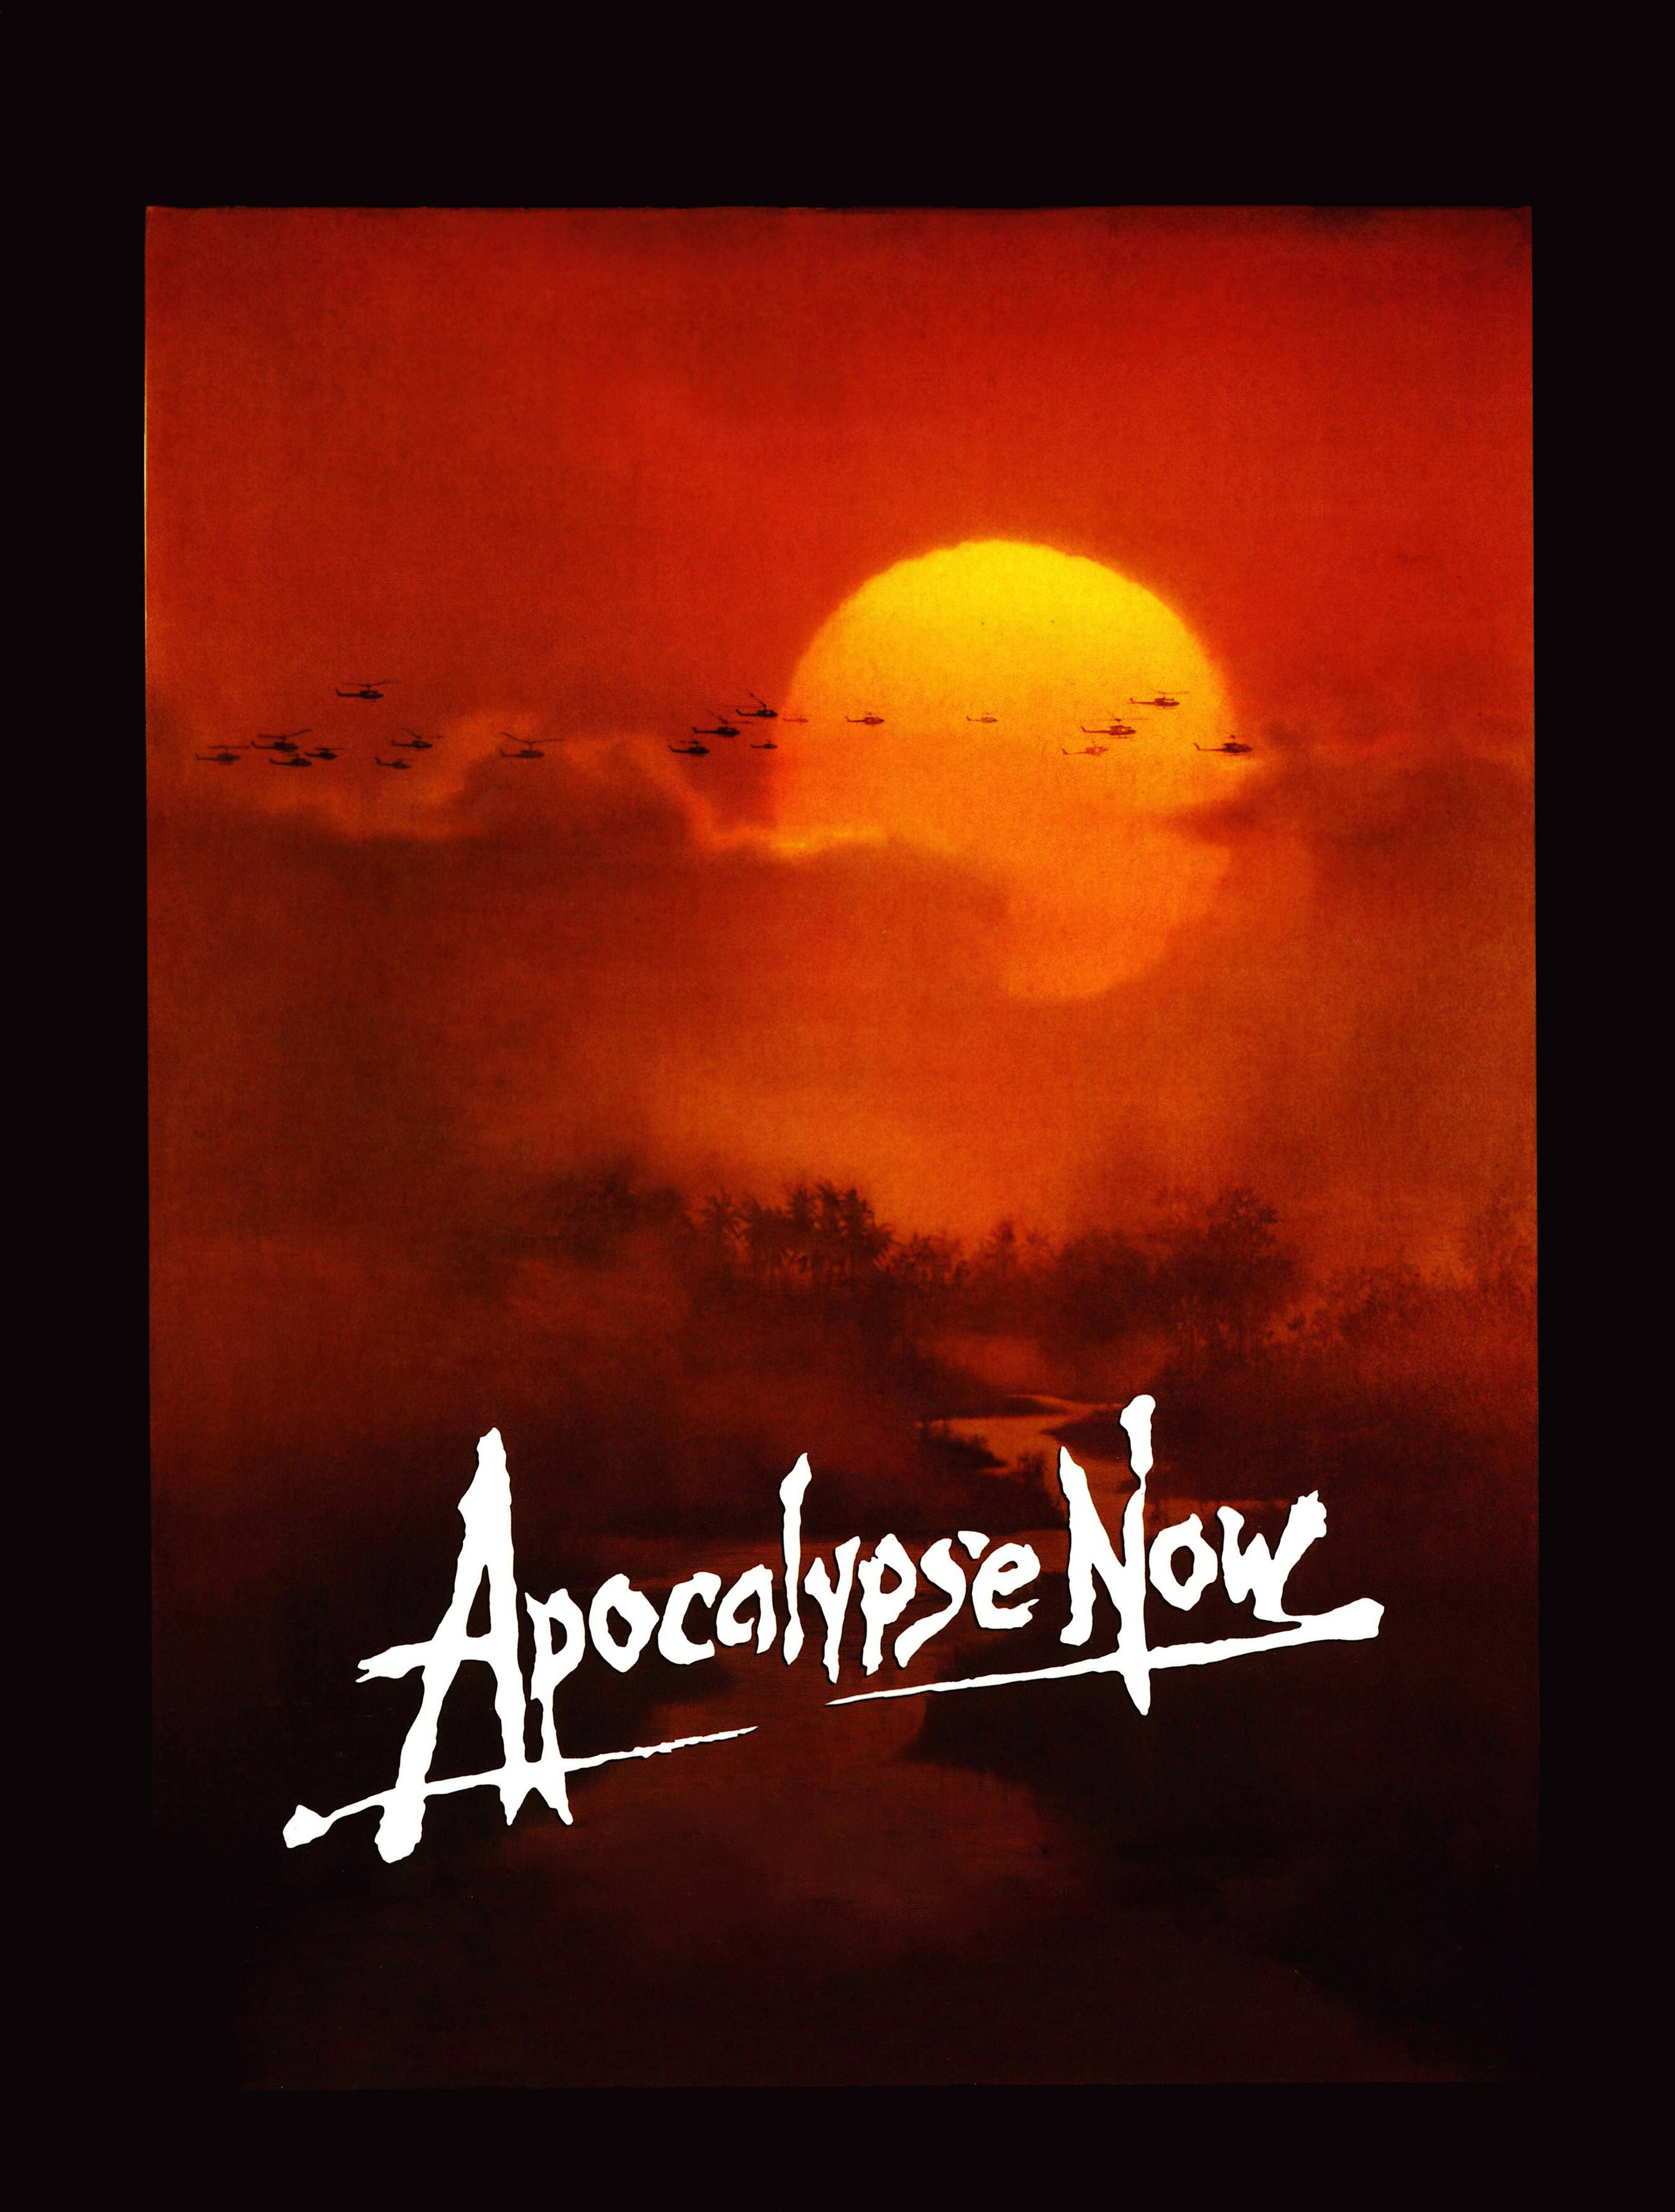 Apocalypse Now 19201080 Wallpaper 865859